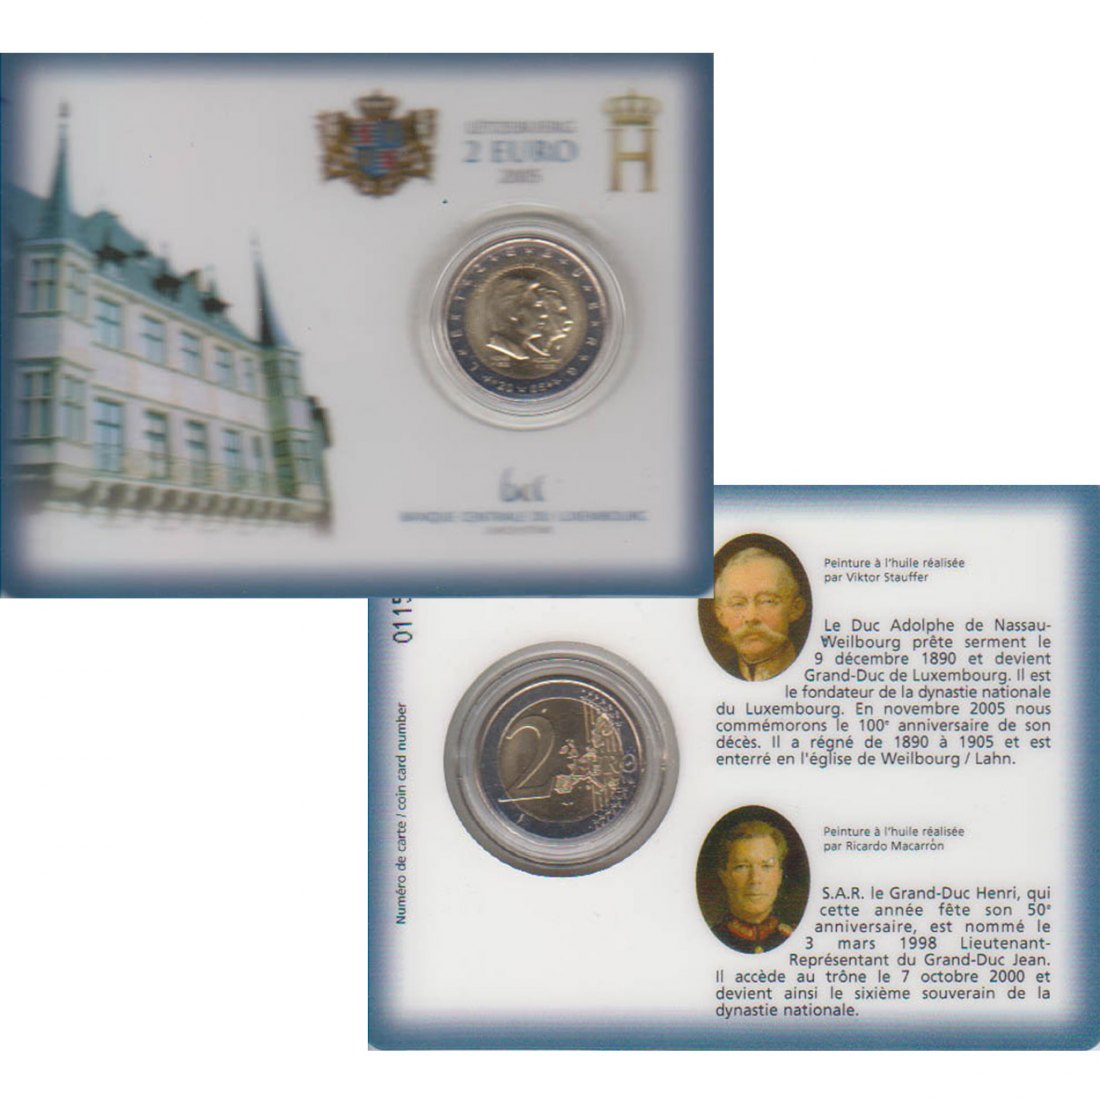  Offiz Coincard 2 €-Sondermünze Luxemburg *100. Todestag von Grossherzog Adolphe* 2005 nur 10.000St!   